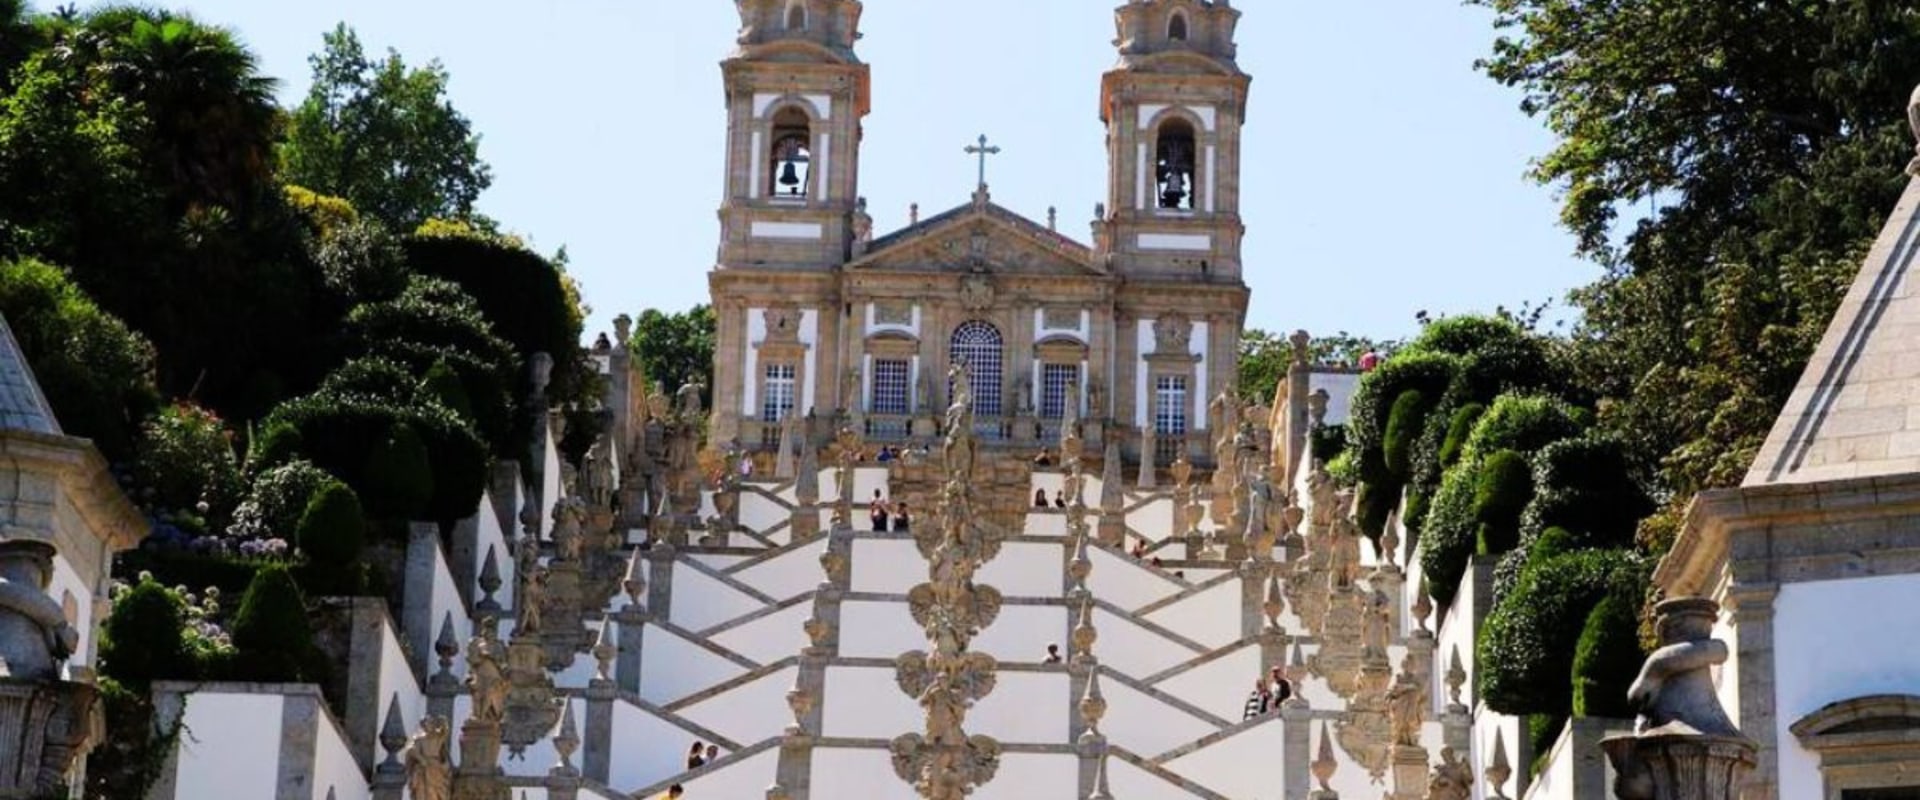 Explorando o lado espiritual de Braga, Portugal